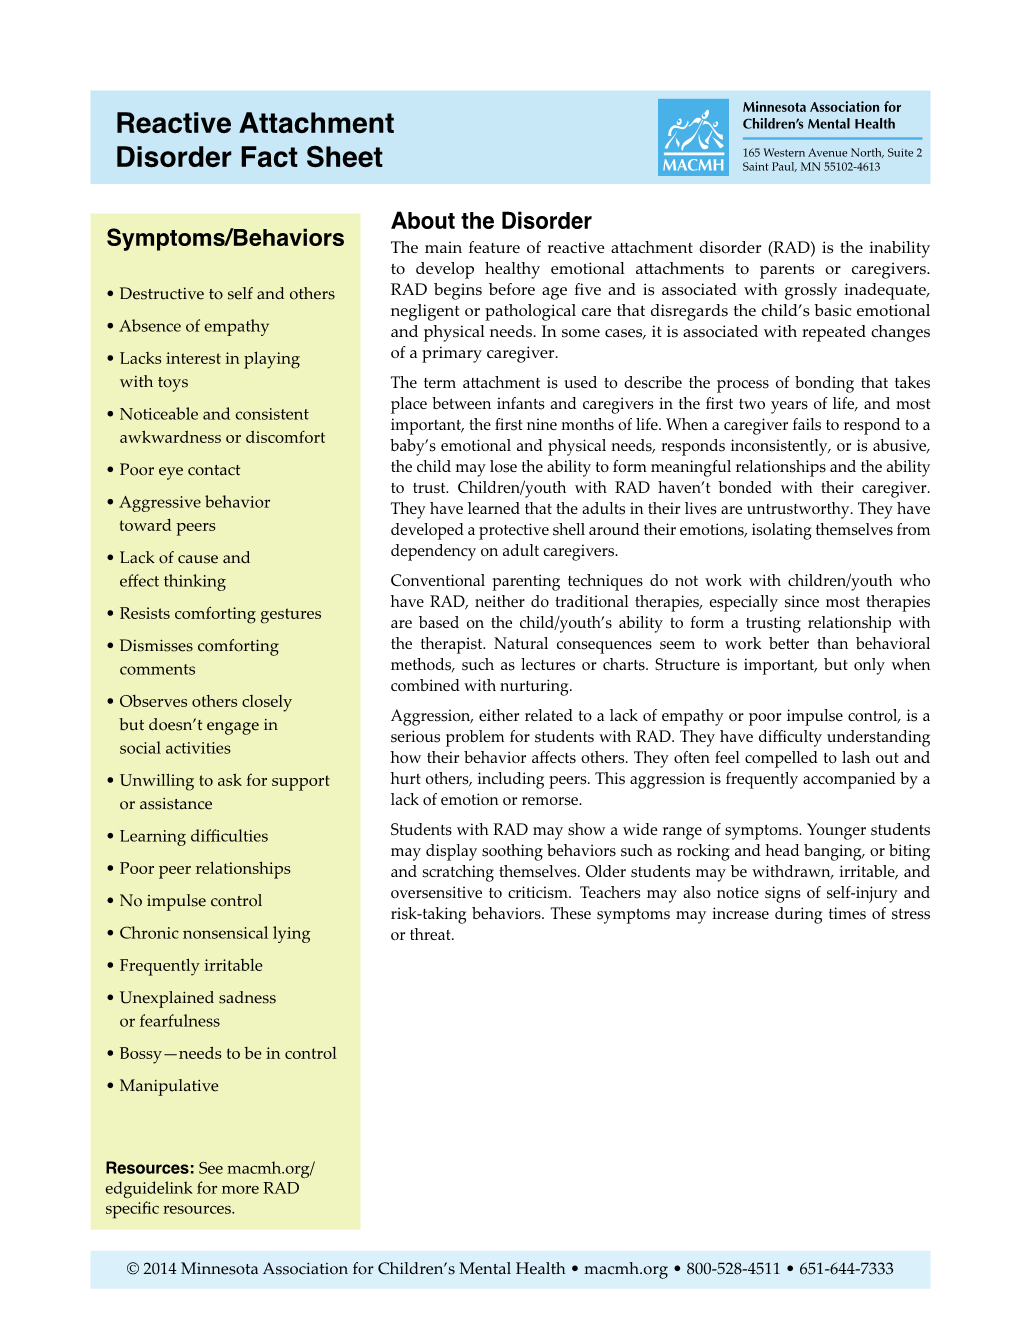 Reactive Attachment Disorder Fact Sheet